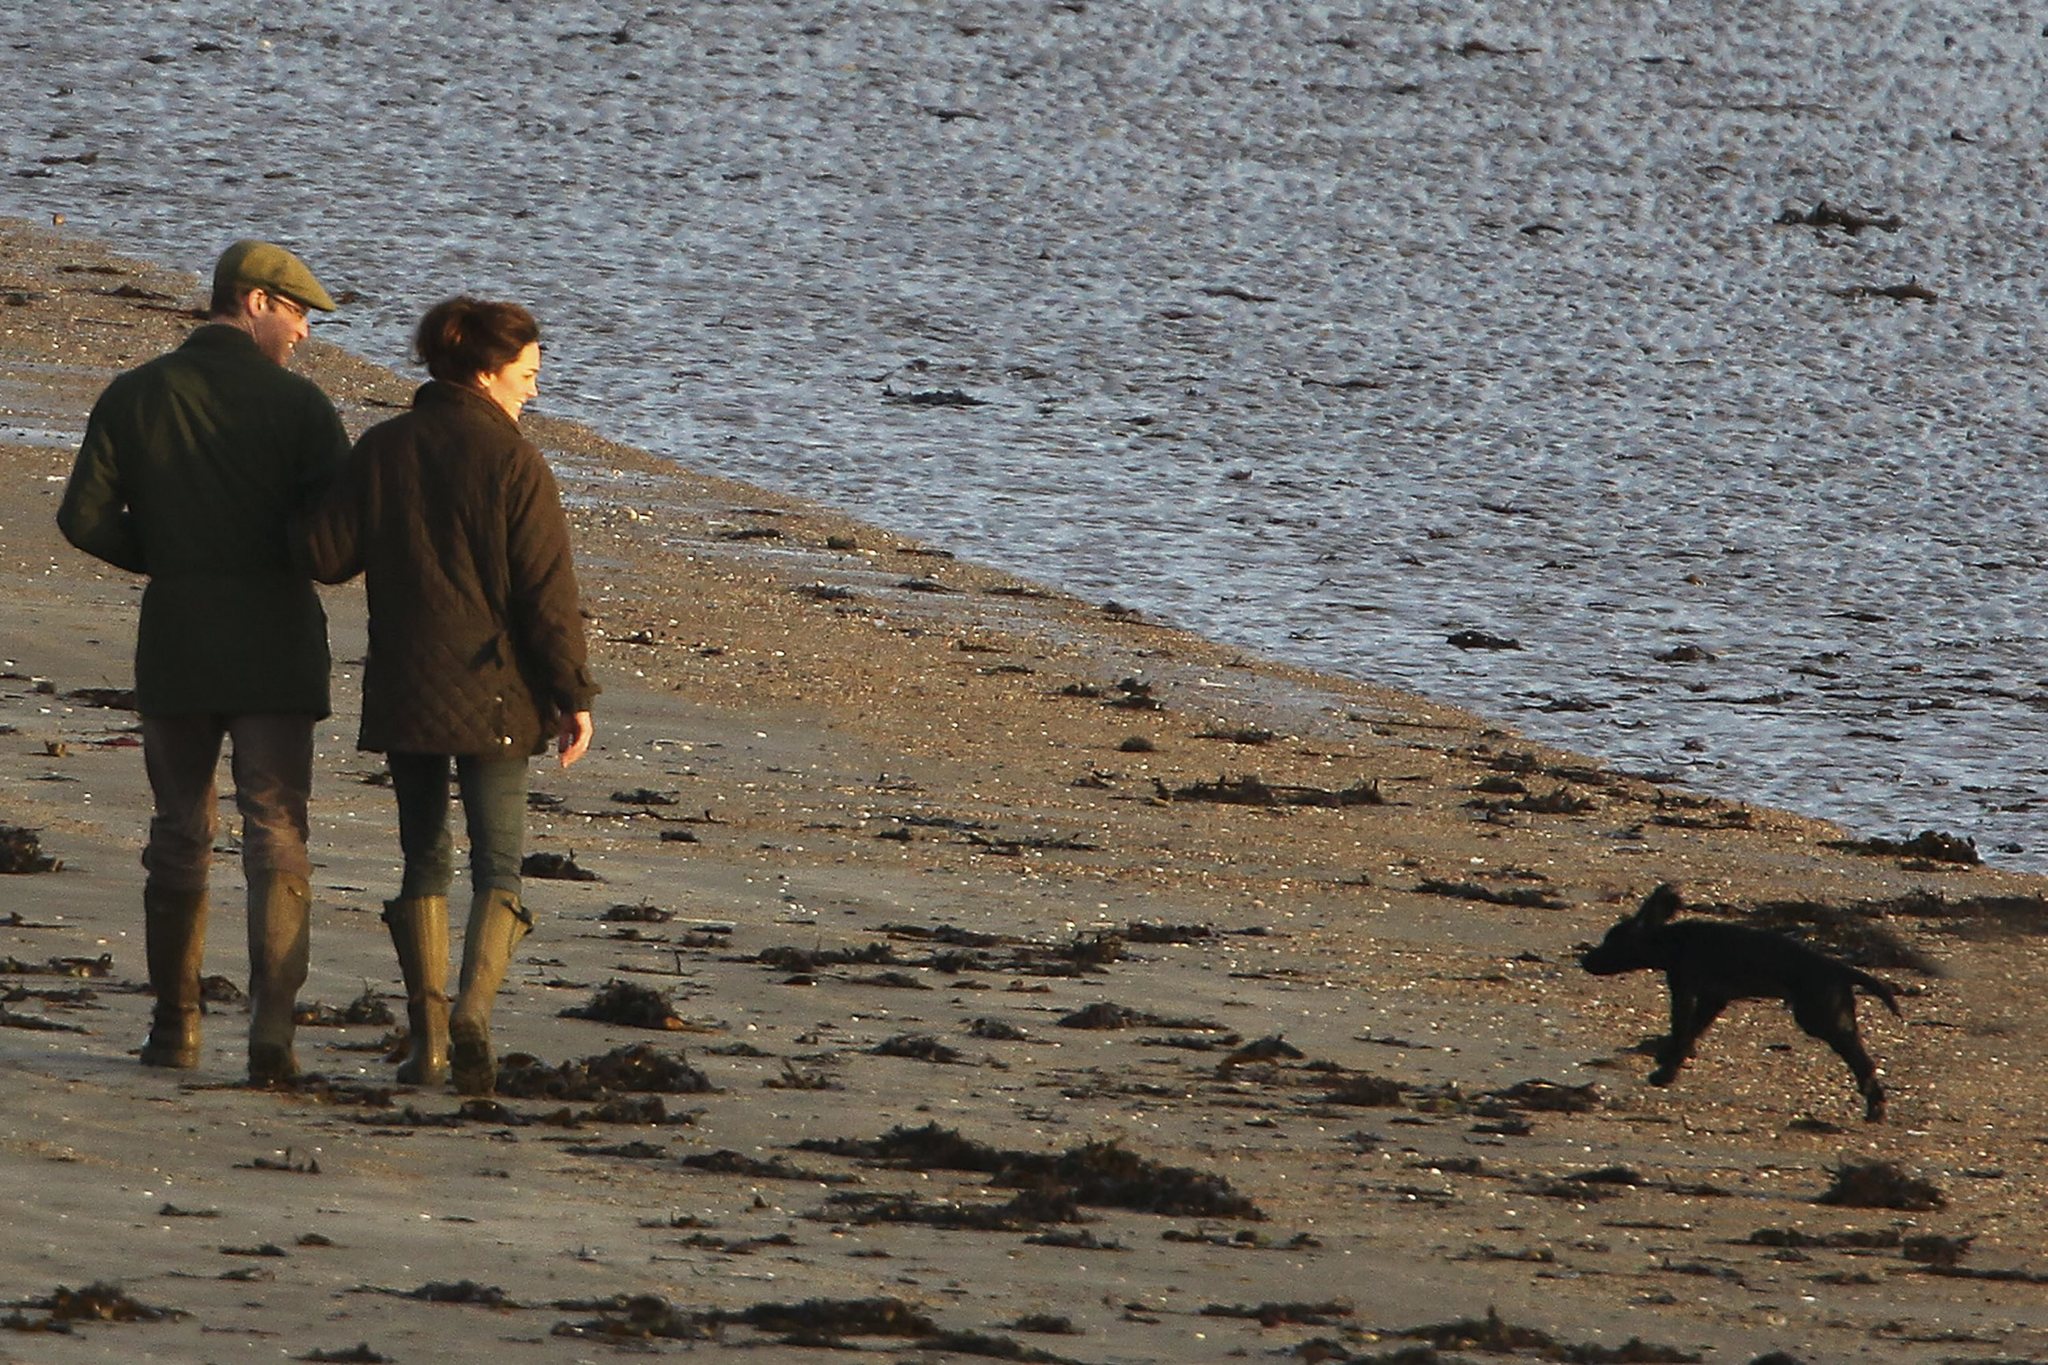 Caminar mejora nuestra salud física y mental. Los duques de Cambridge pasean por la playa.